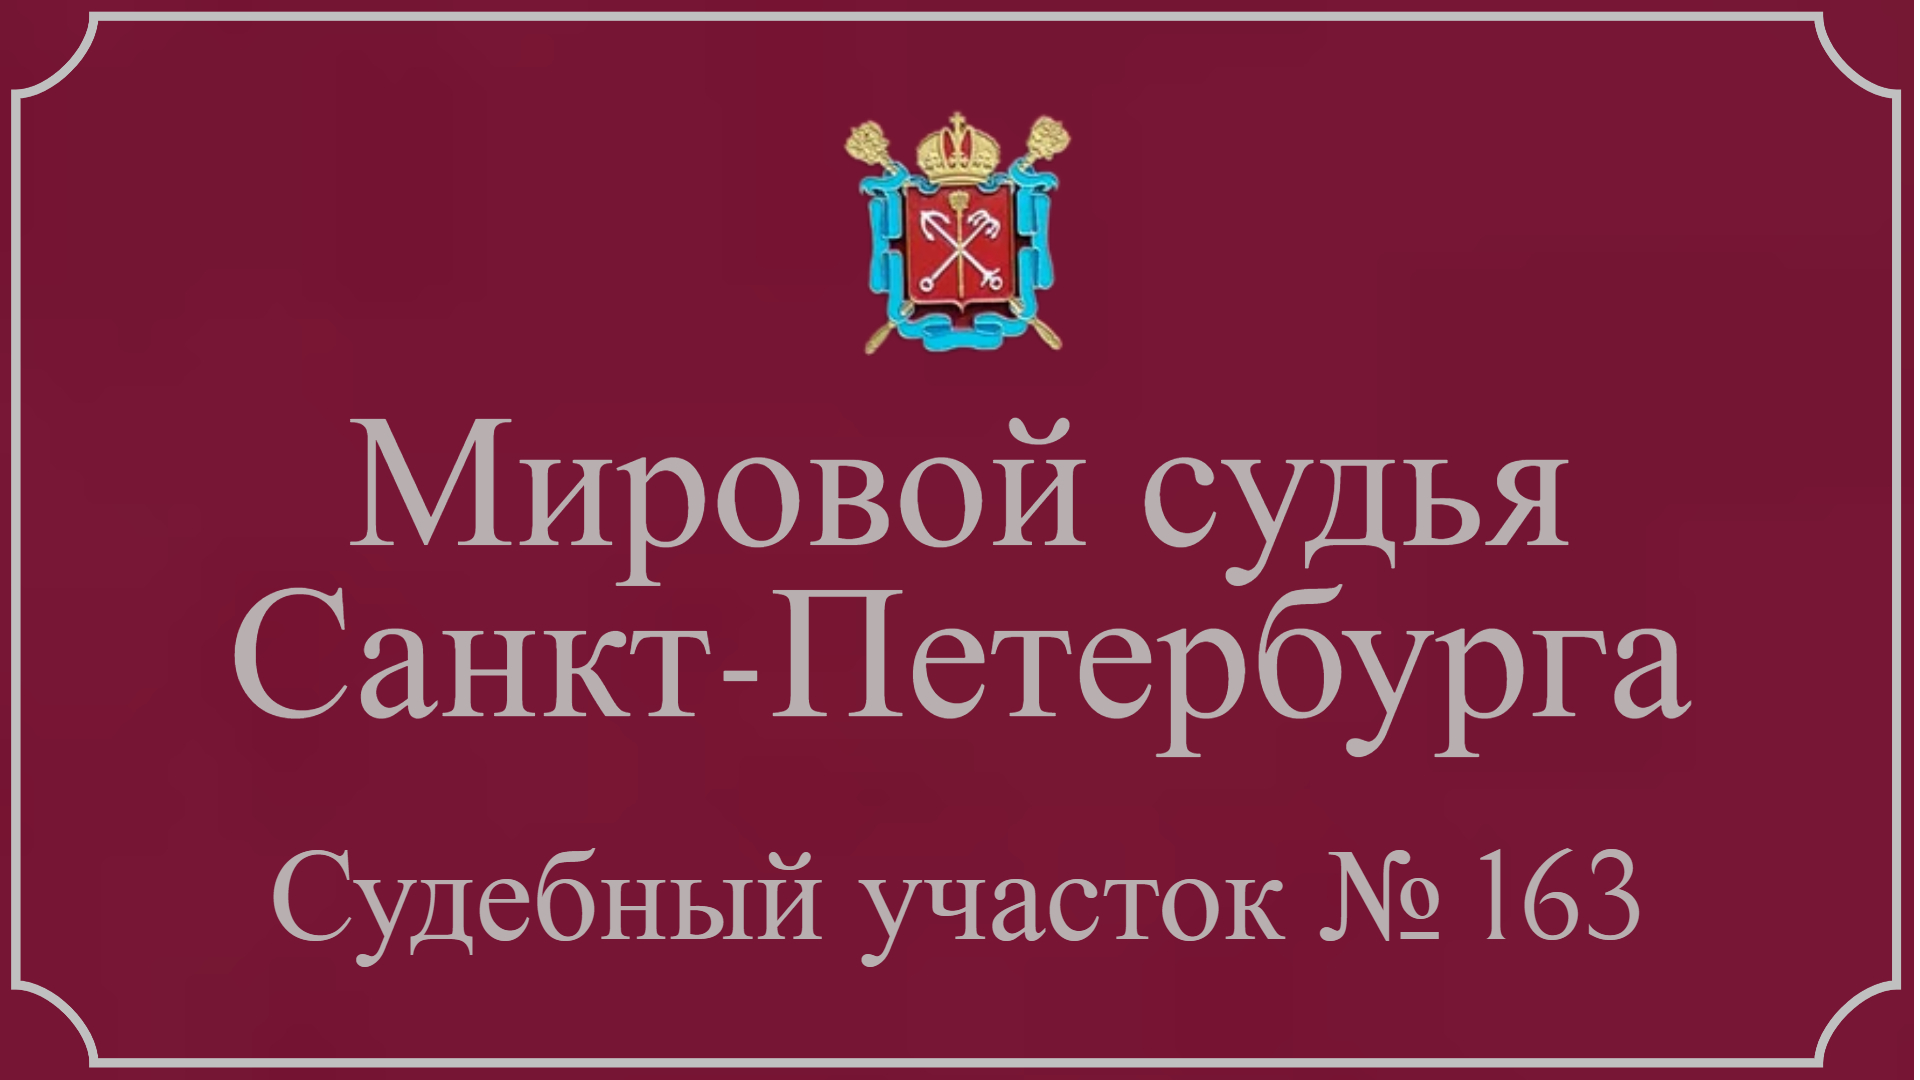 Информация по 163 судебному участку в Санкт-Петербурге.